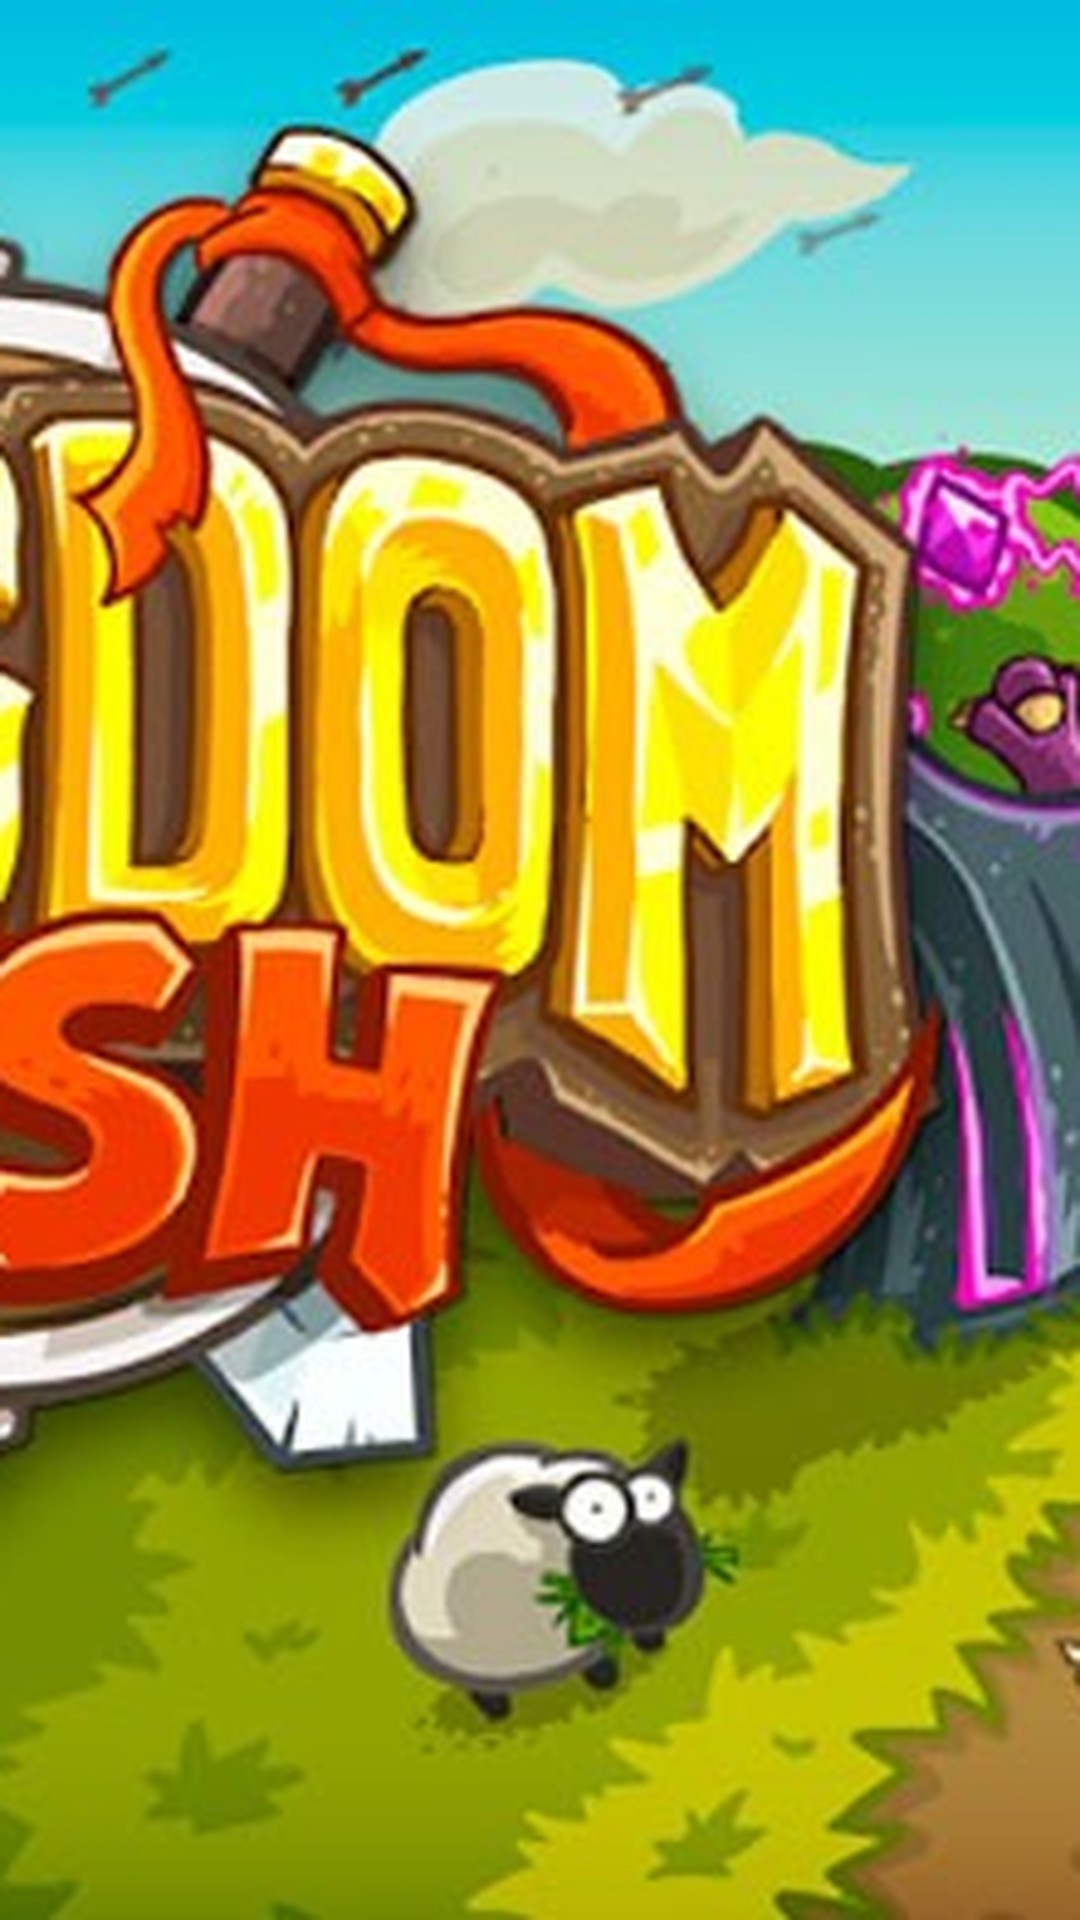 Kingdom Rush 🕹️ Jogue Kingdom Rush Grátis no Jogos123